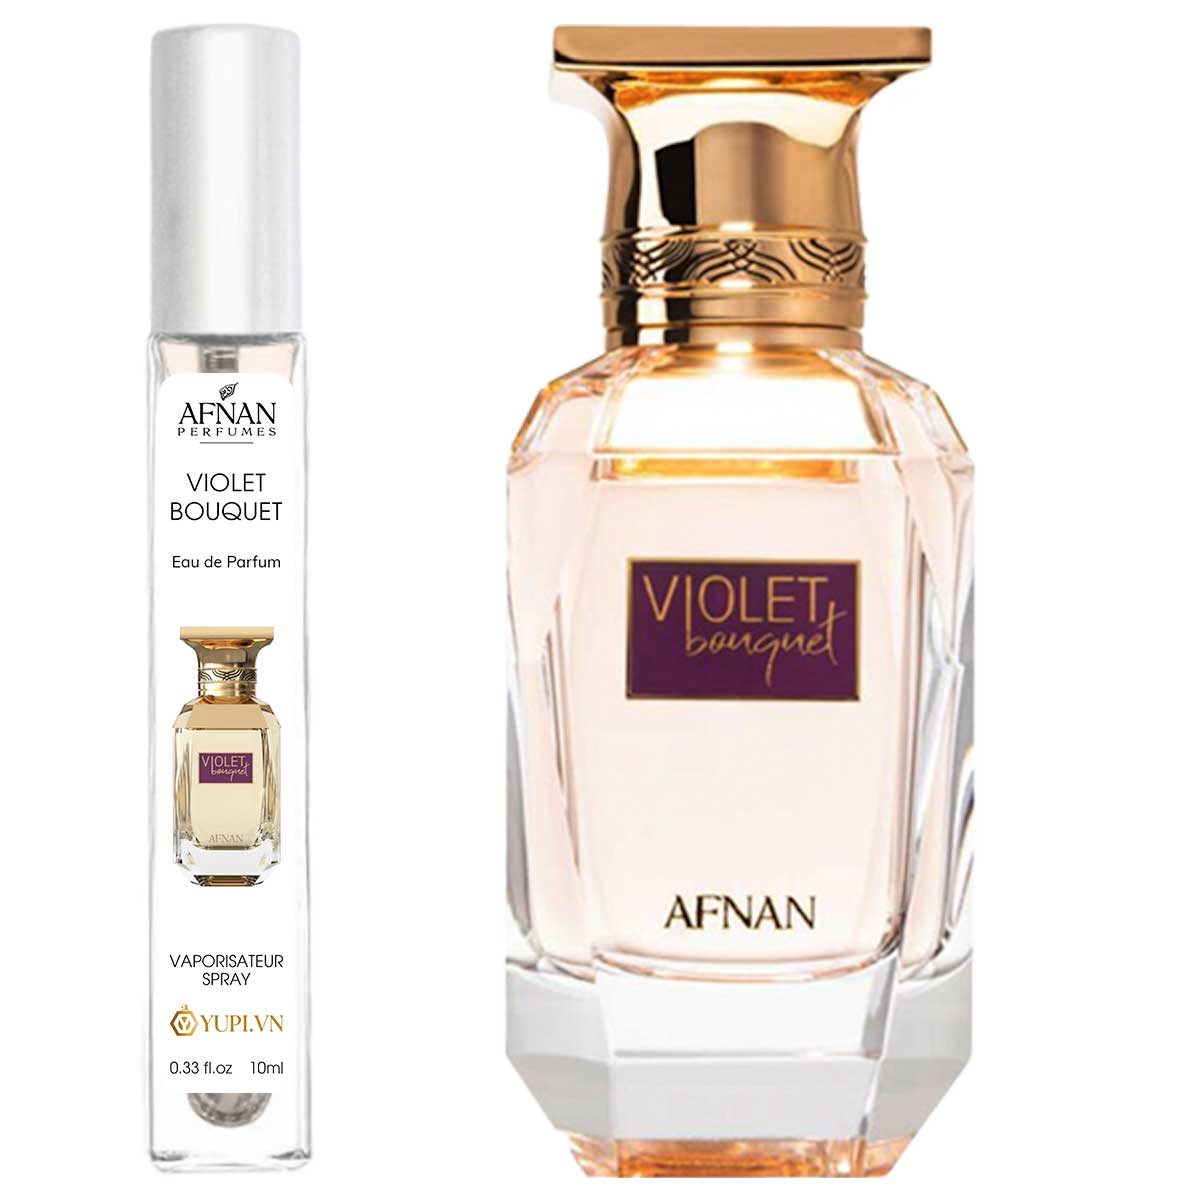 afnan perfumes violet bouquet edp chiet 10ml